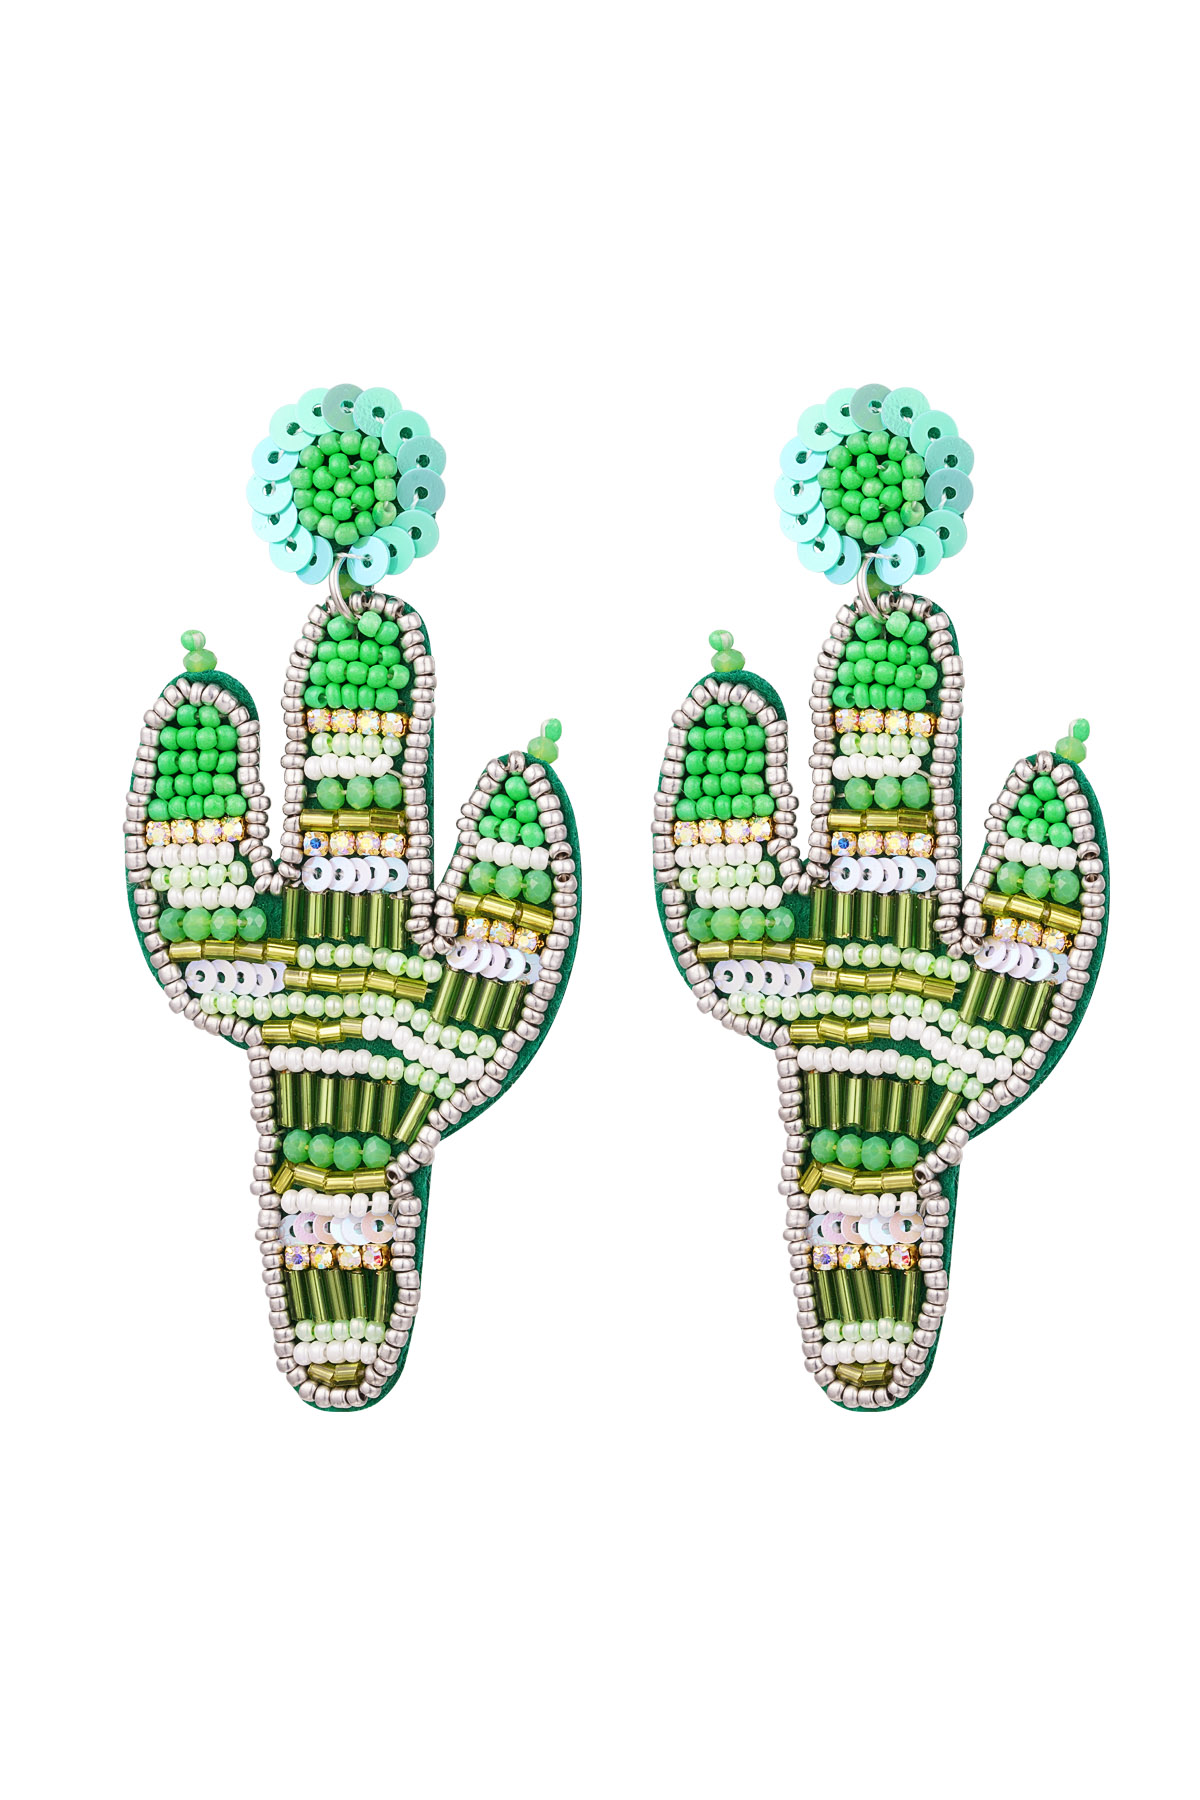 Boucles d'oreilles perlées cactus - Perles de verre vertes